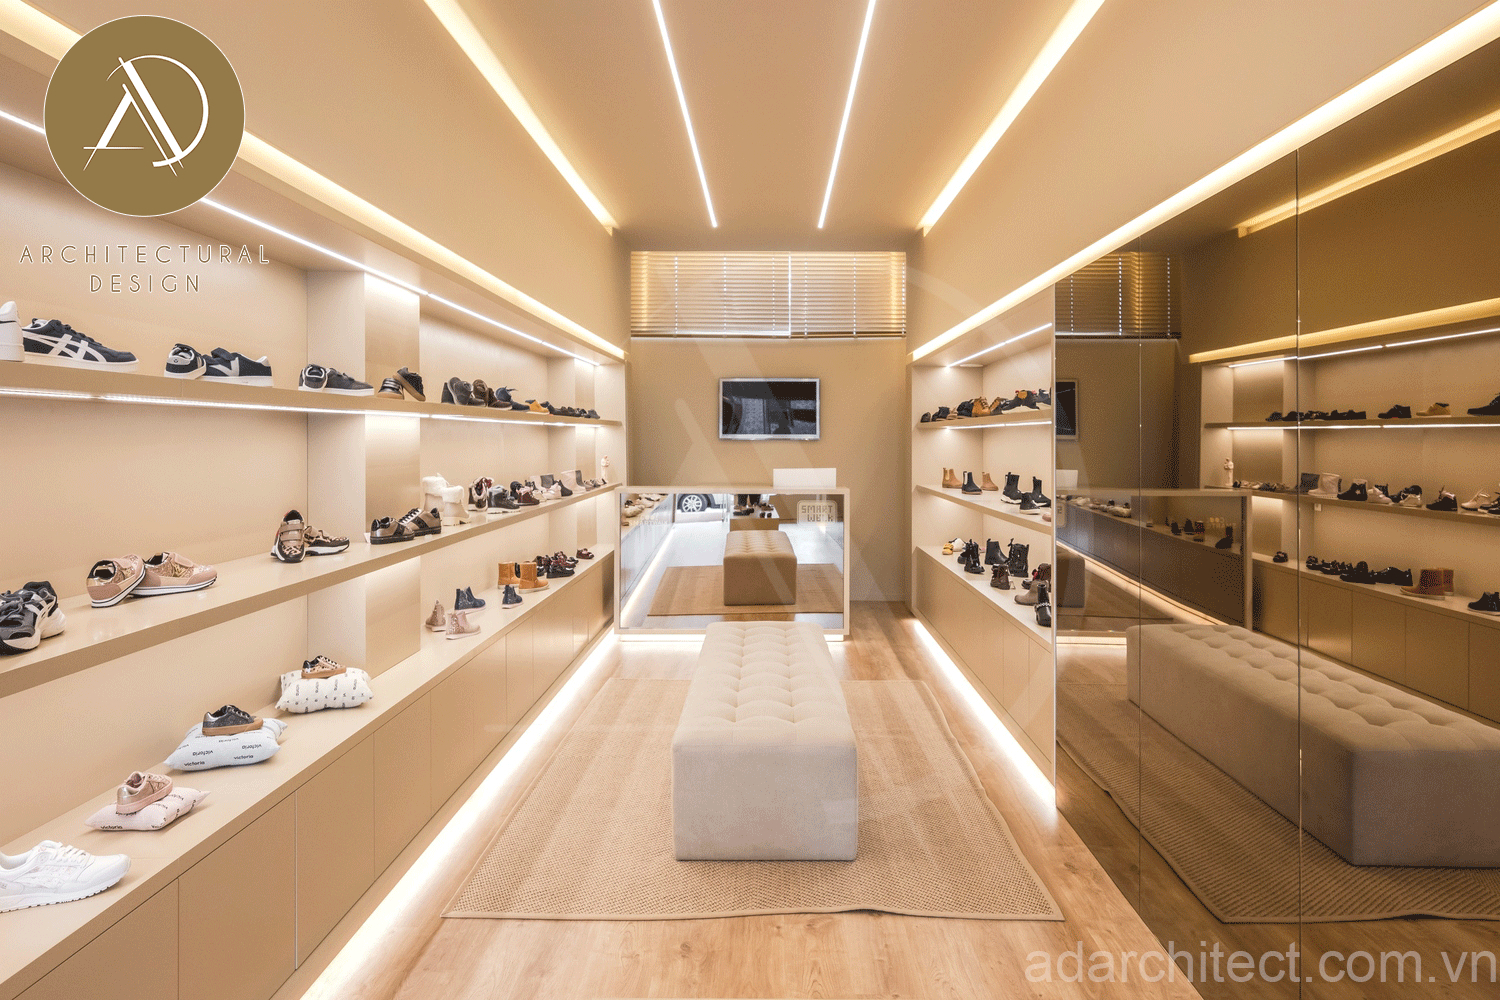 Thiết kế tiệm giày sneaker nhỏ gọn, đẹp và hiện đại